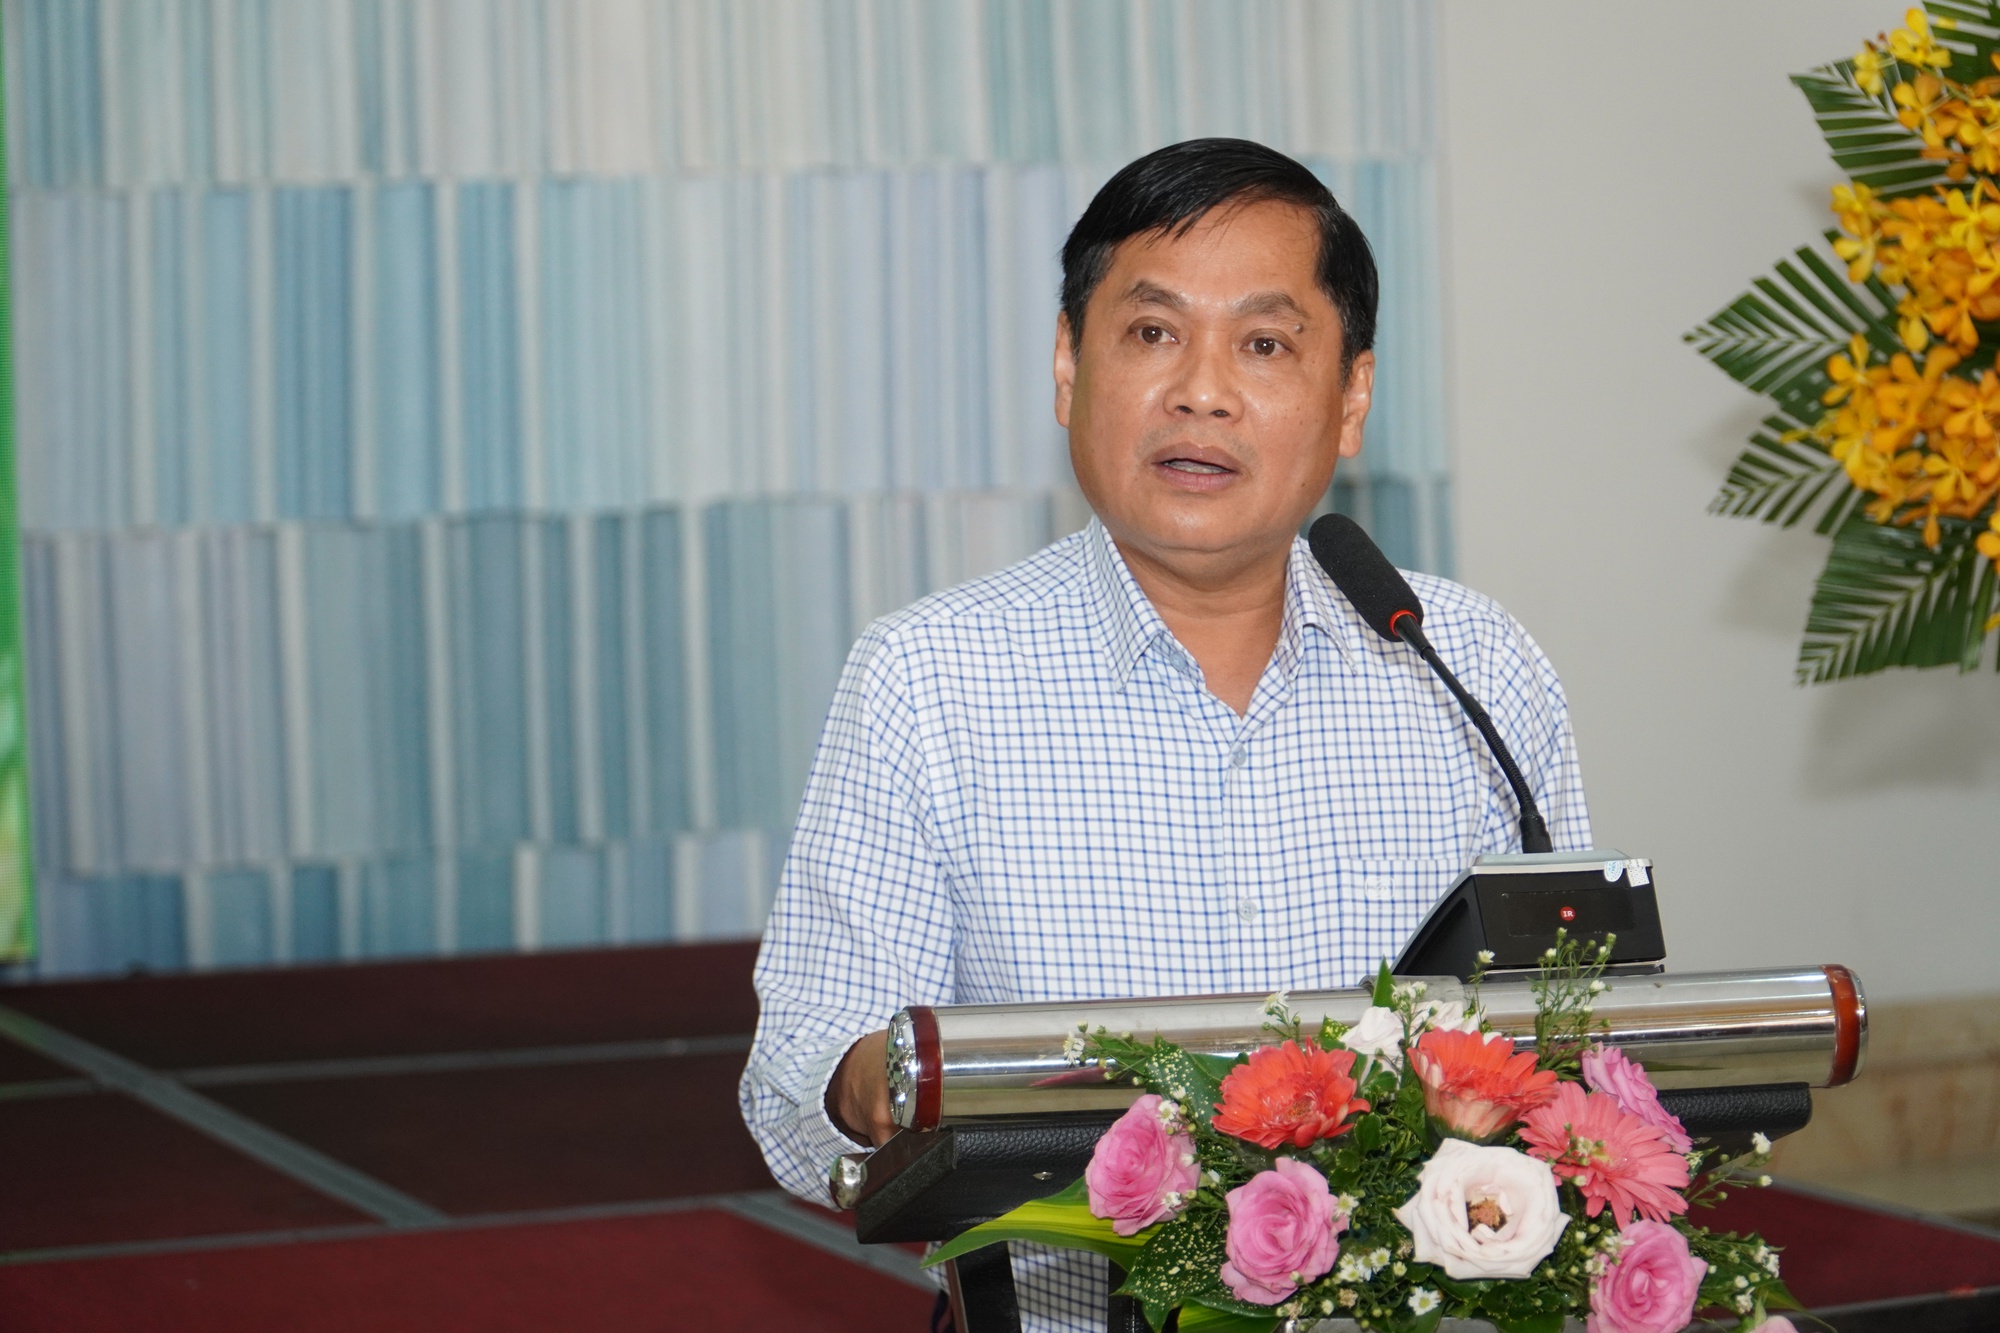 Phó chủ tịch thành phố Cần Thơ được chấp thuận thôi việc - Ảnh 1.